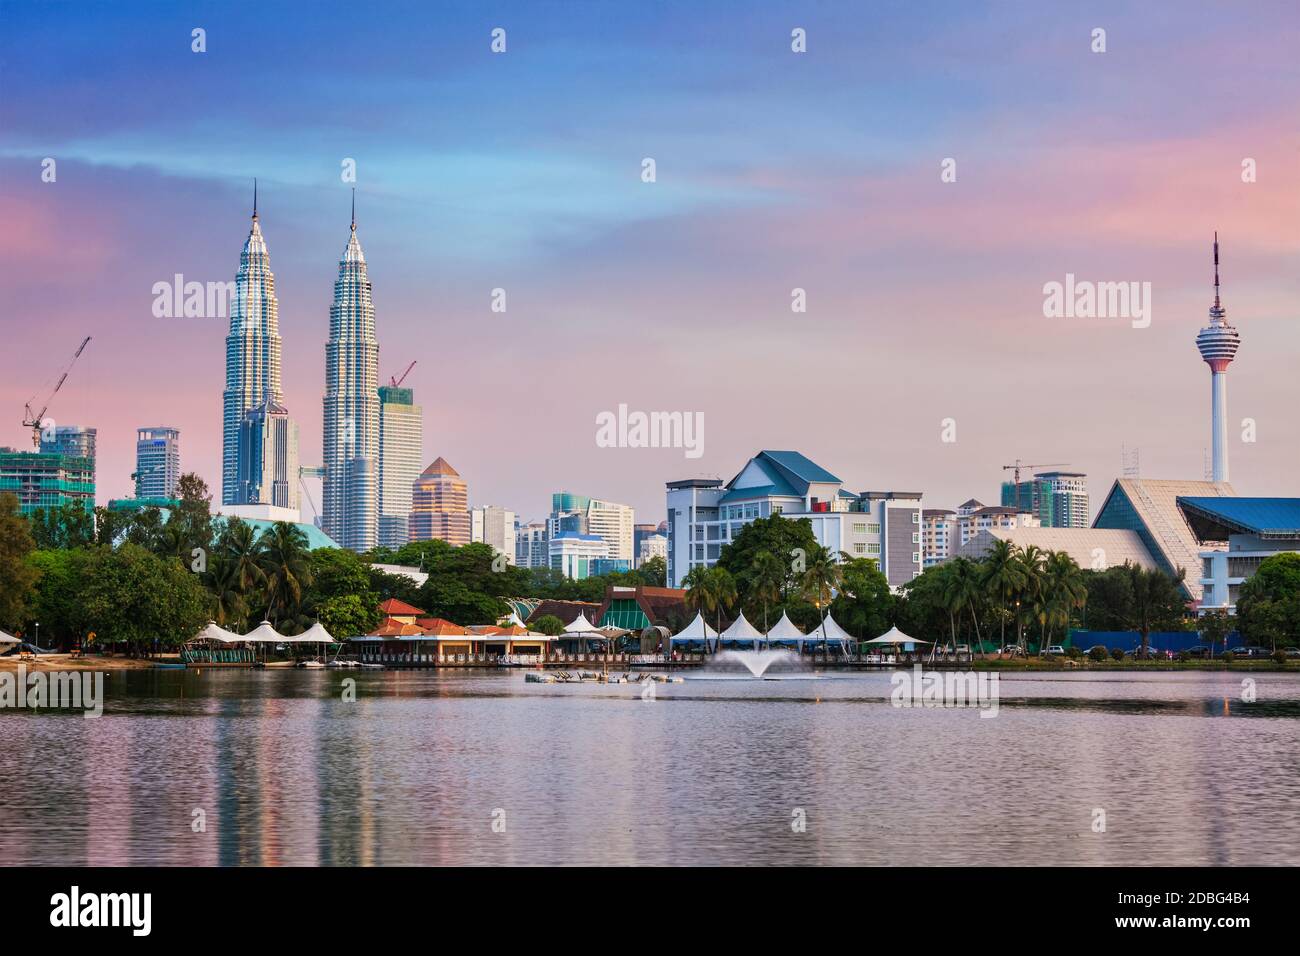 Kuala Lumpur Malaysia January 11 2018 Stock Photo 1017560950